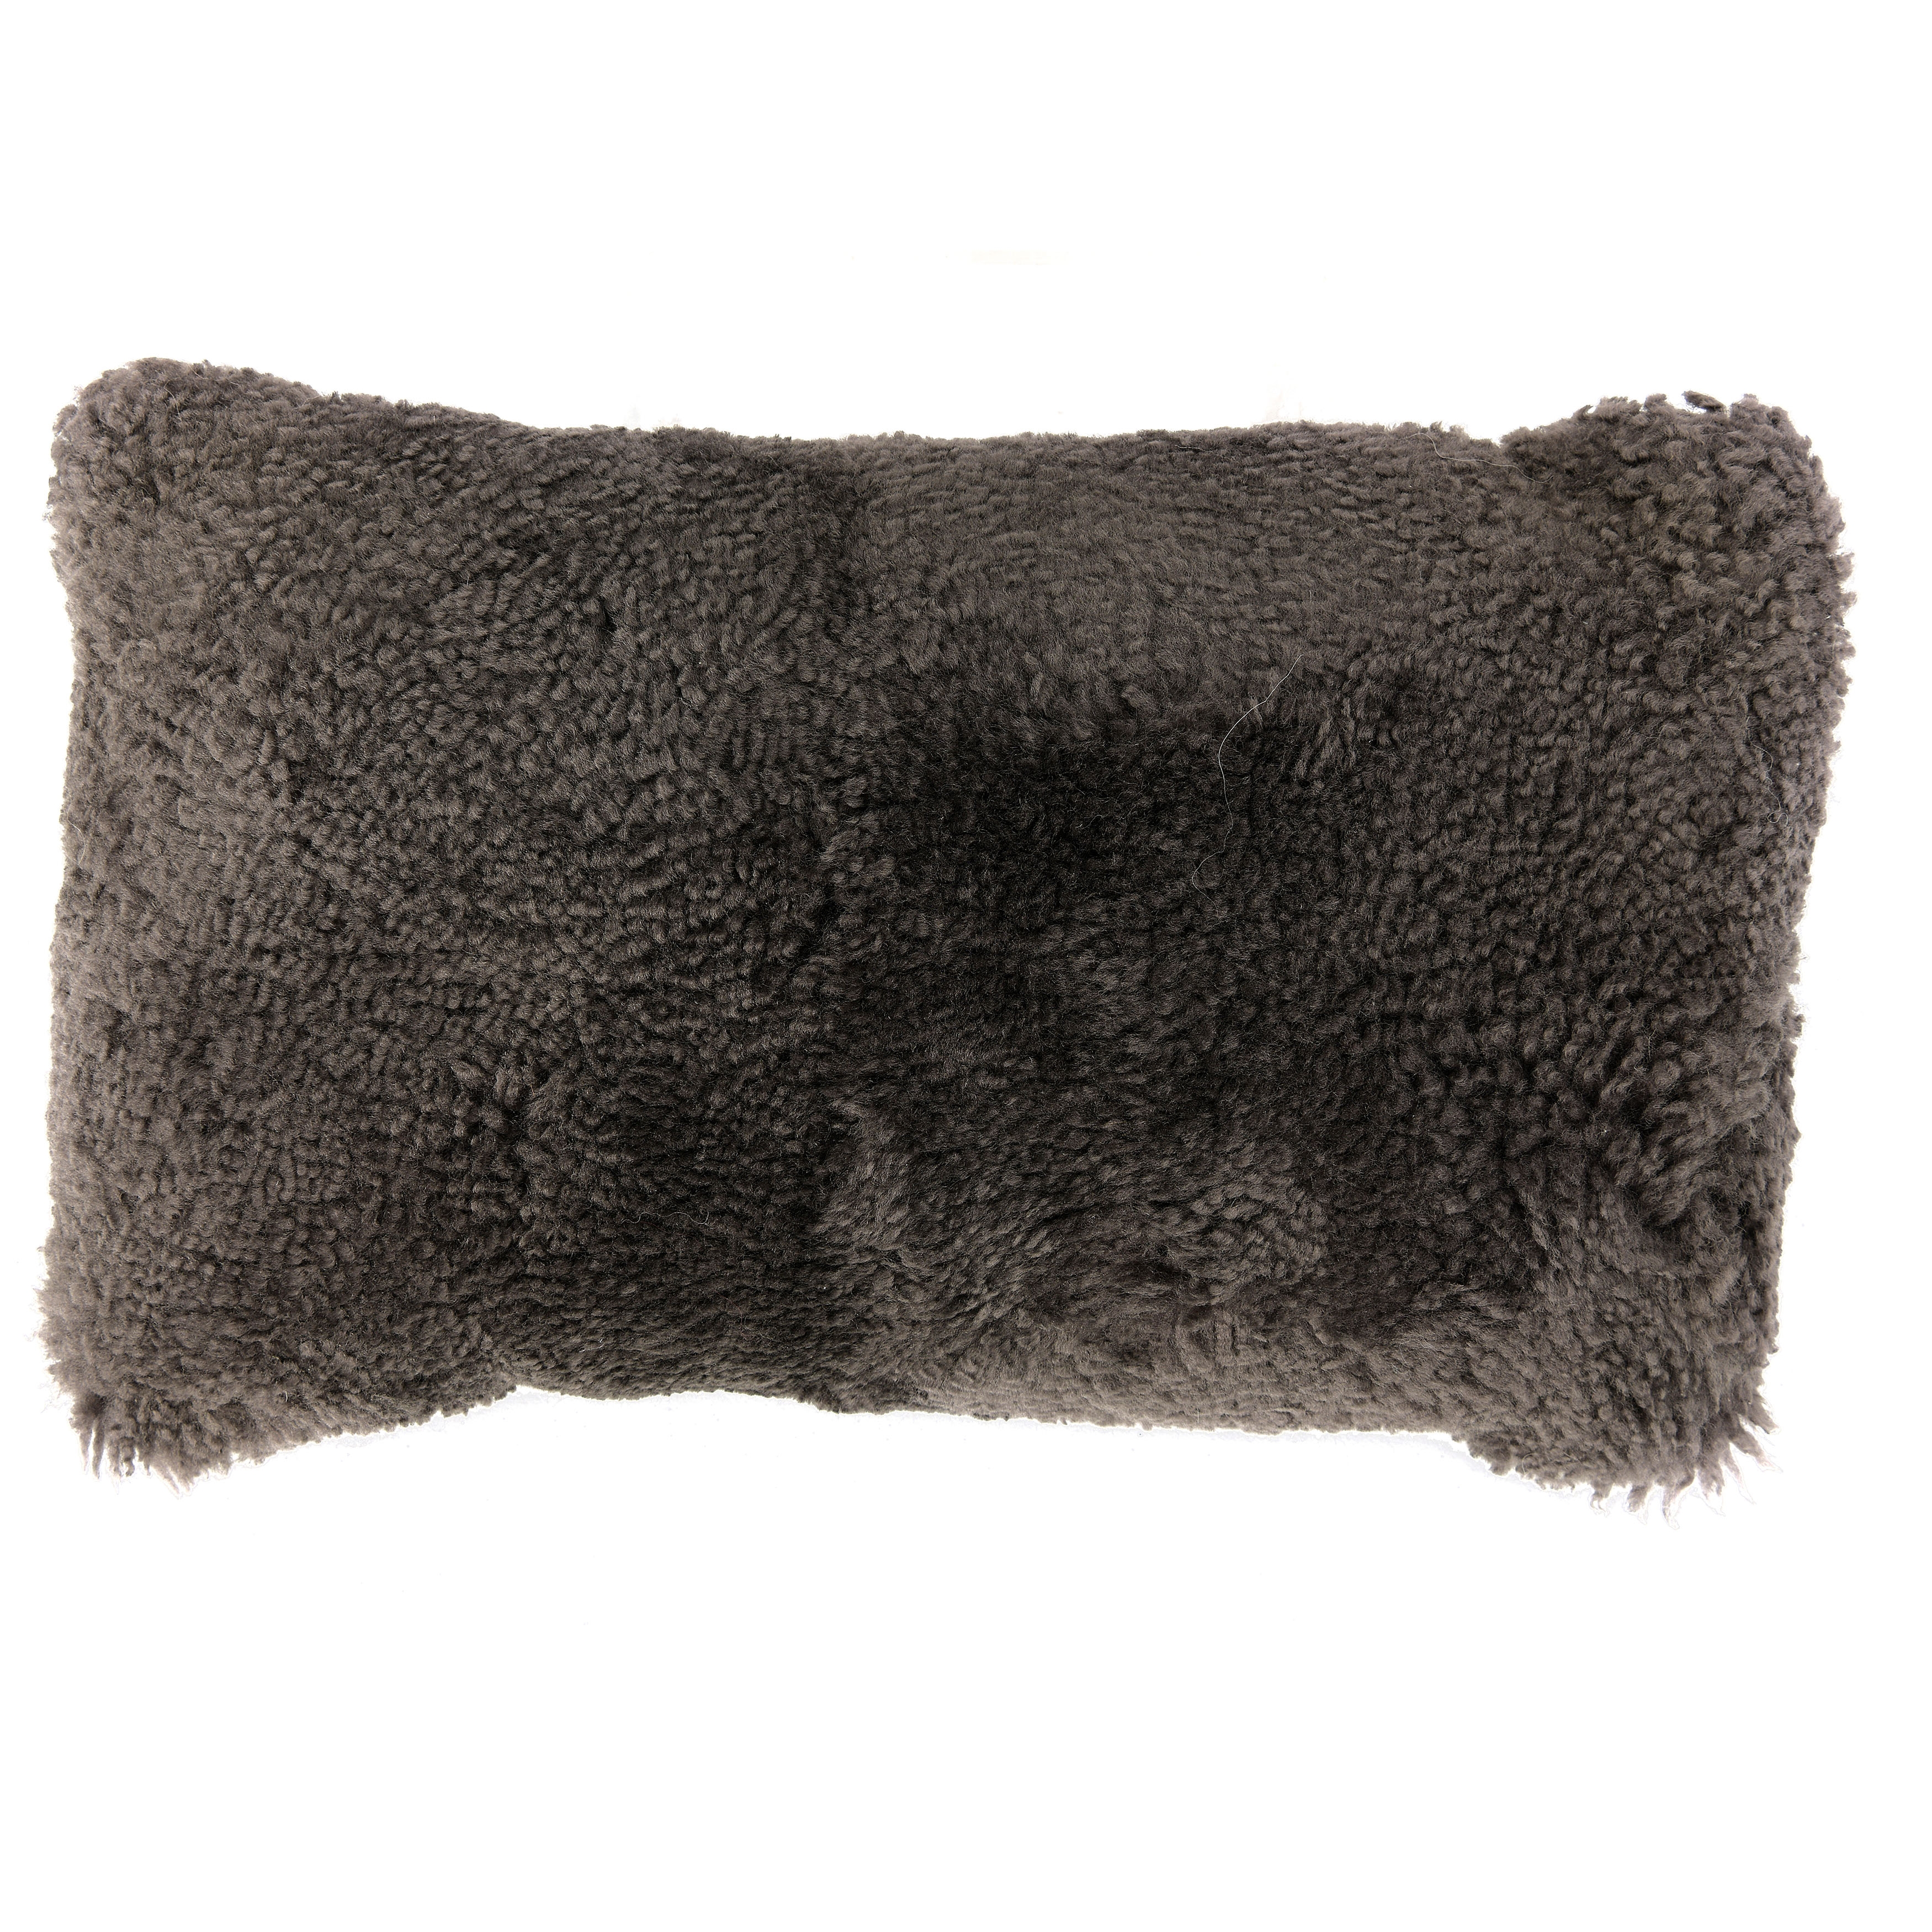 Charcoal New Zealand Lamb Fur Lumbar Pillow - Image 0